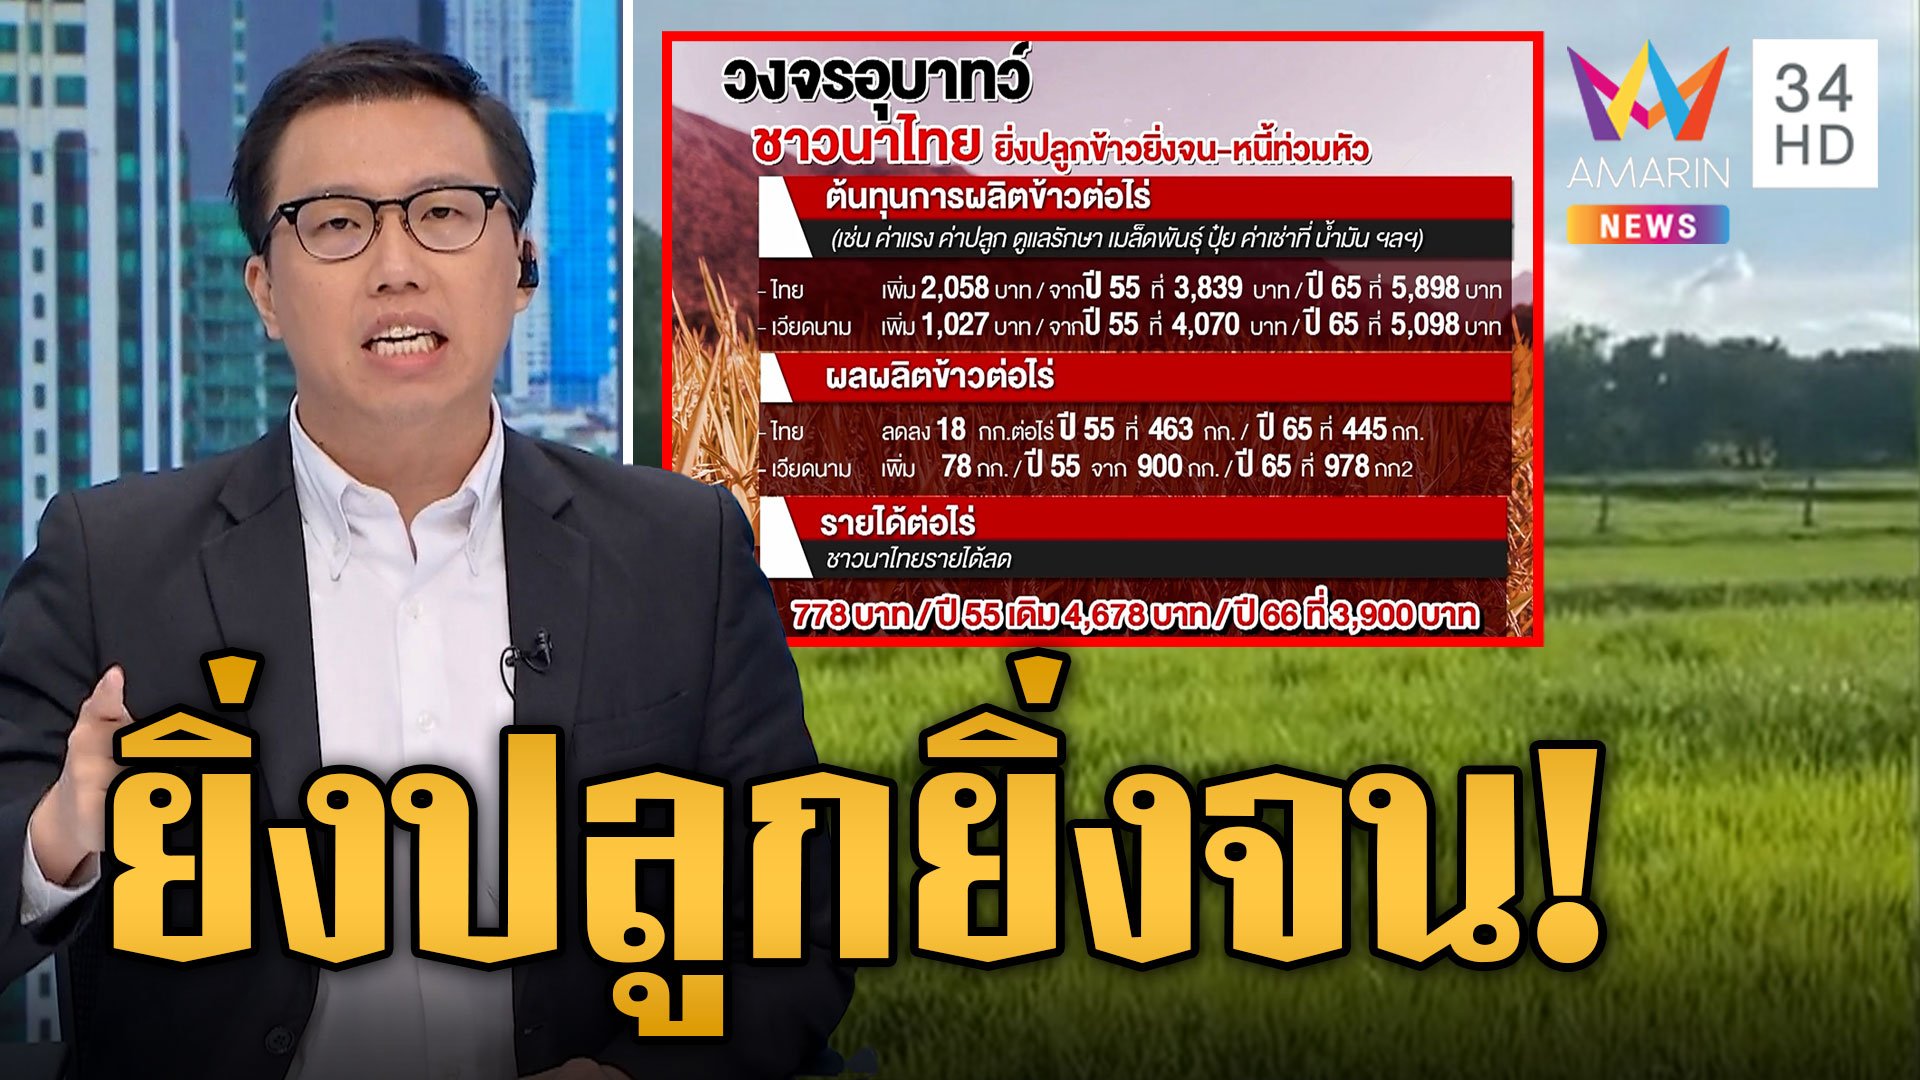 จนสุดในเอเชีย! หอการค้าชี้ชาวนาไทย ยิ่งปลูกข้าวยิ่งจน-หนี้ท่วม | ข่าวเที่ยงอมรินทร์ | 27 ก.ค. 66 | AMARIN TVHD34